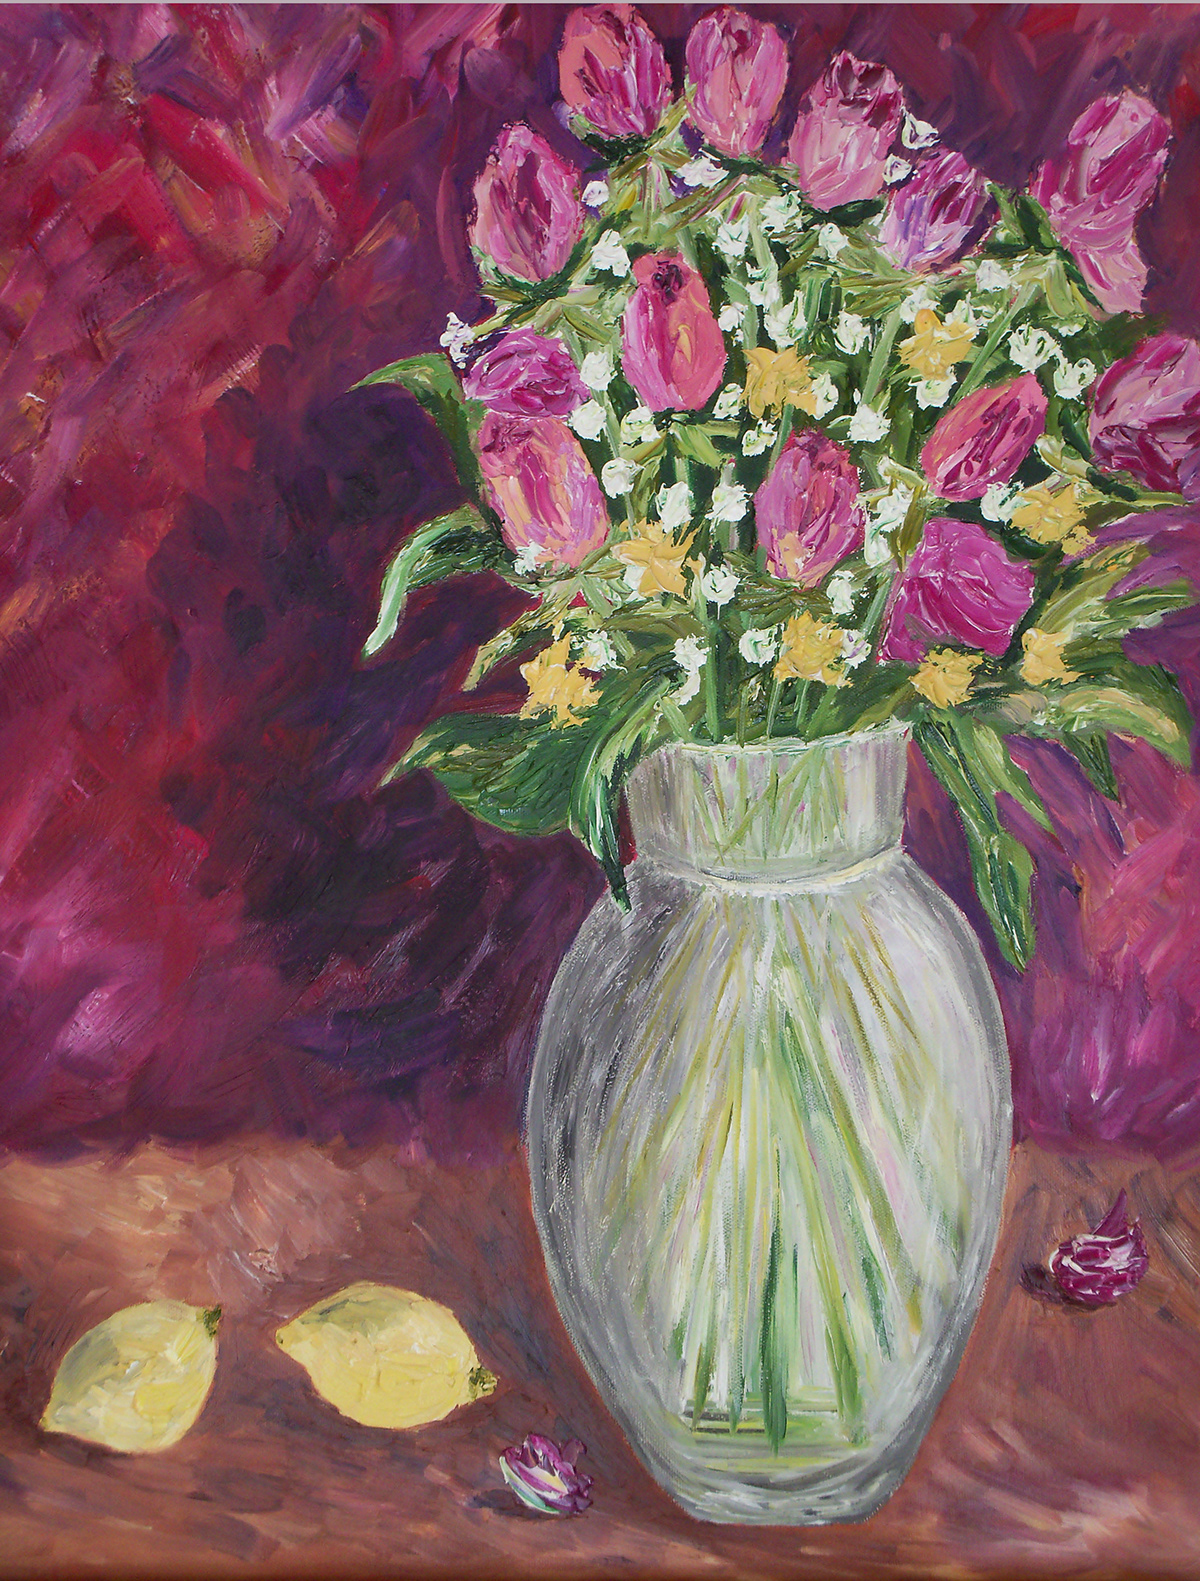 Floral oil paintings